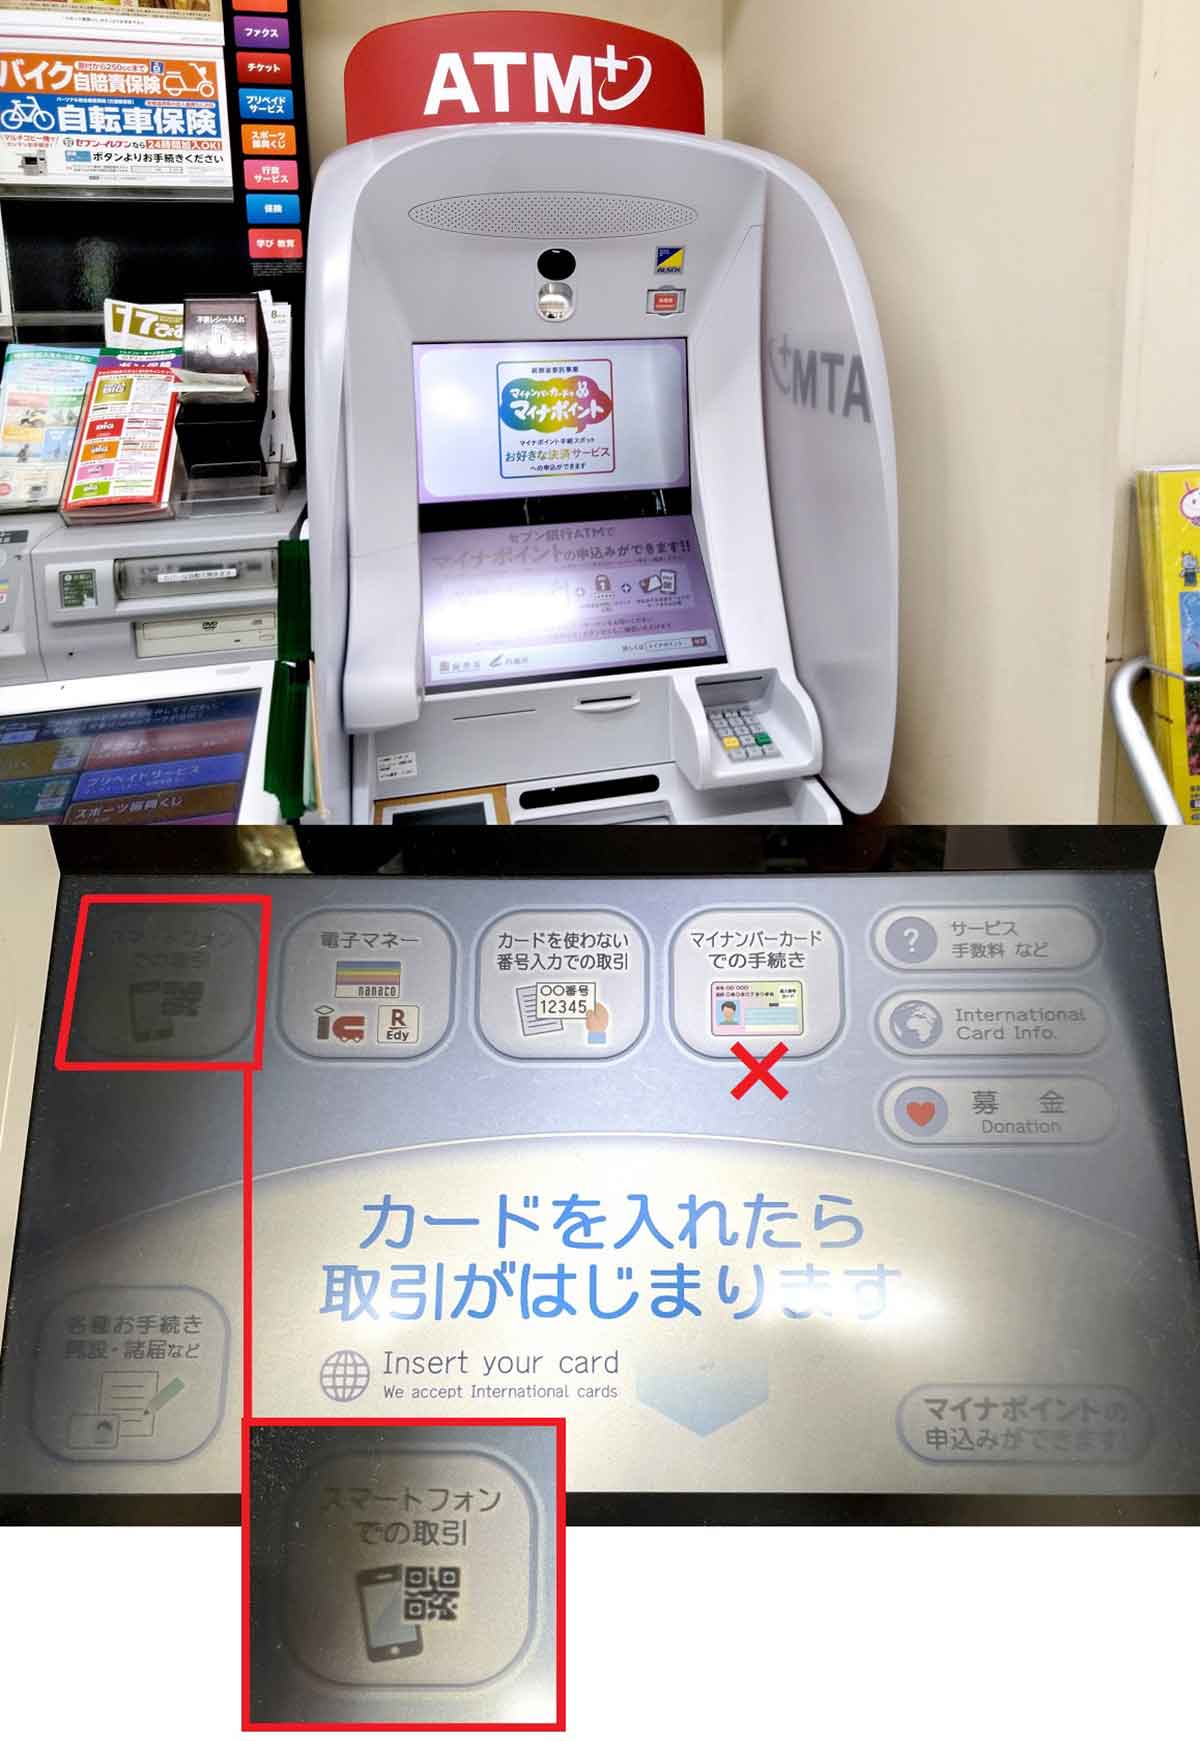 「楽天キャッシュ」にセブン銀行ATMからチャージする手順2